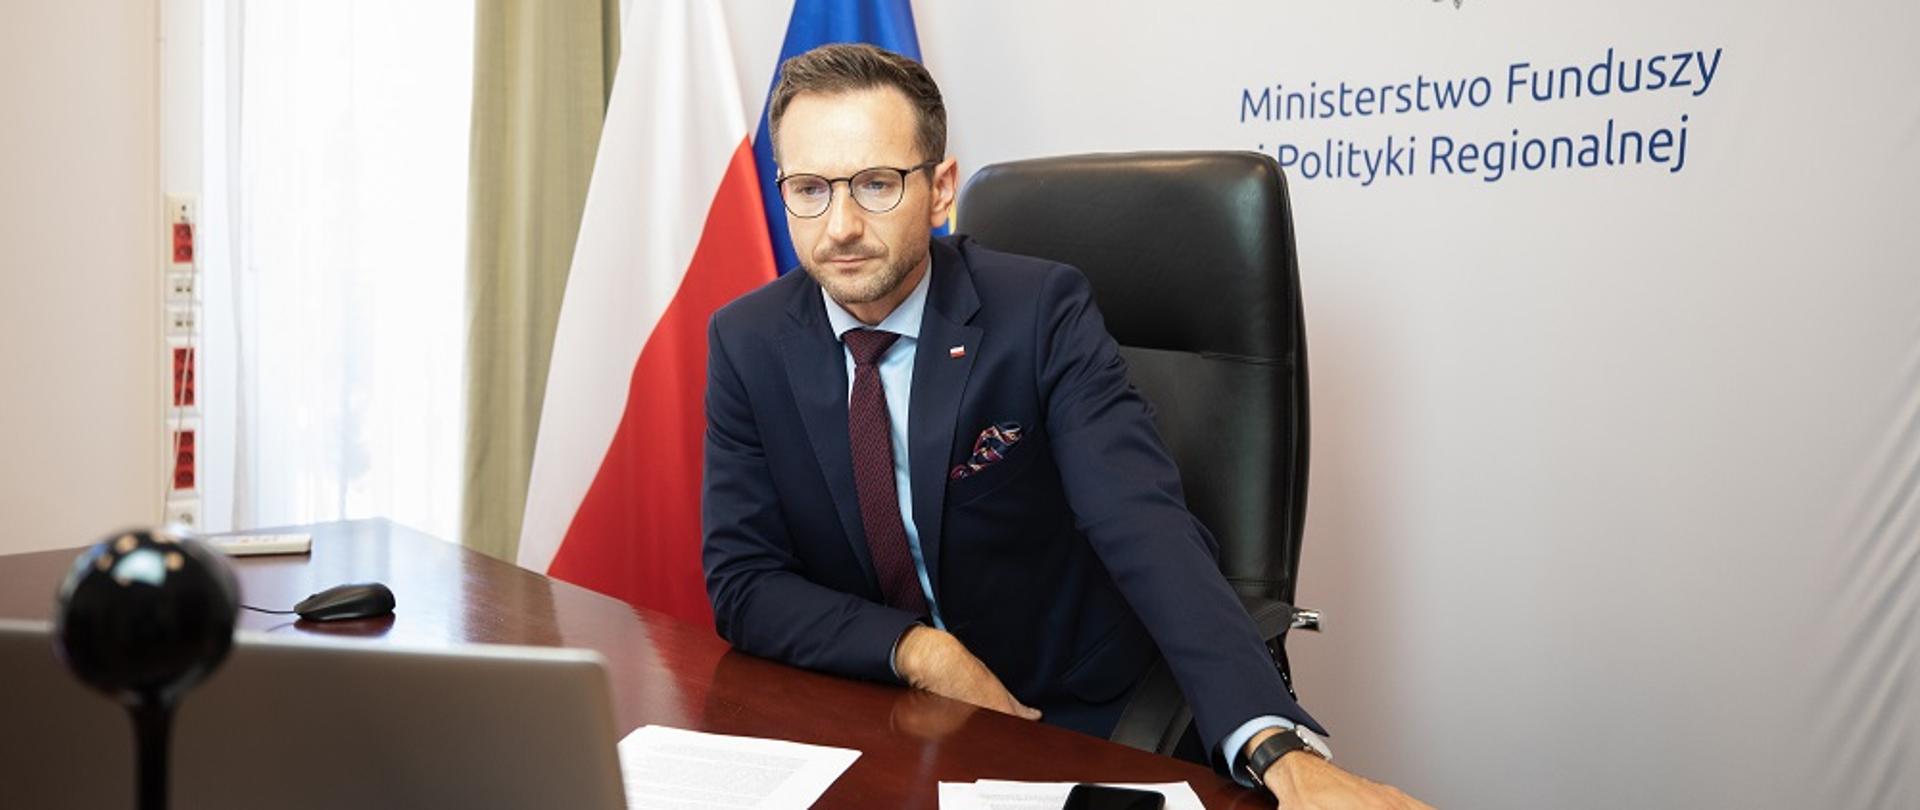 Waldemar Buda siedzi za biurkiem, przed nim laptop, za nim fagi Polski i UE oraz tło z logo MFiPR.